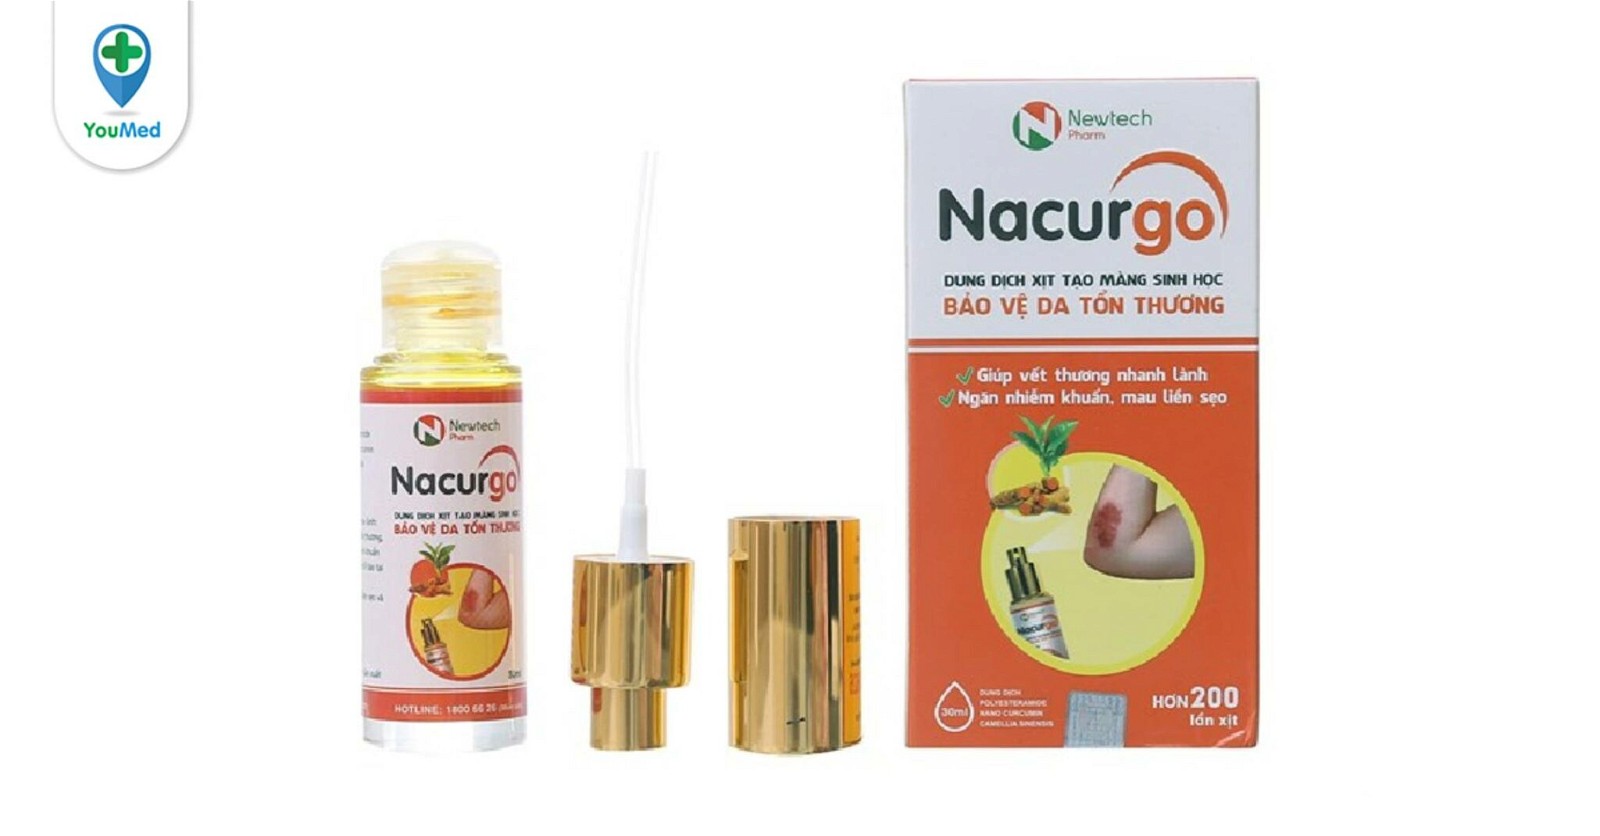 Gel Nacurgo có thể được sử dụng cho mọi độ tuổi không?
